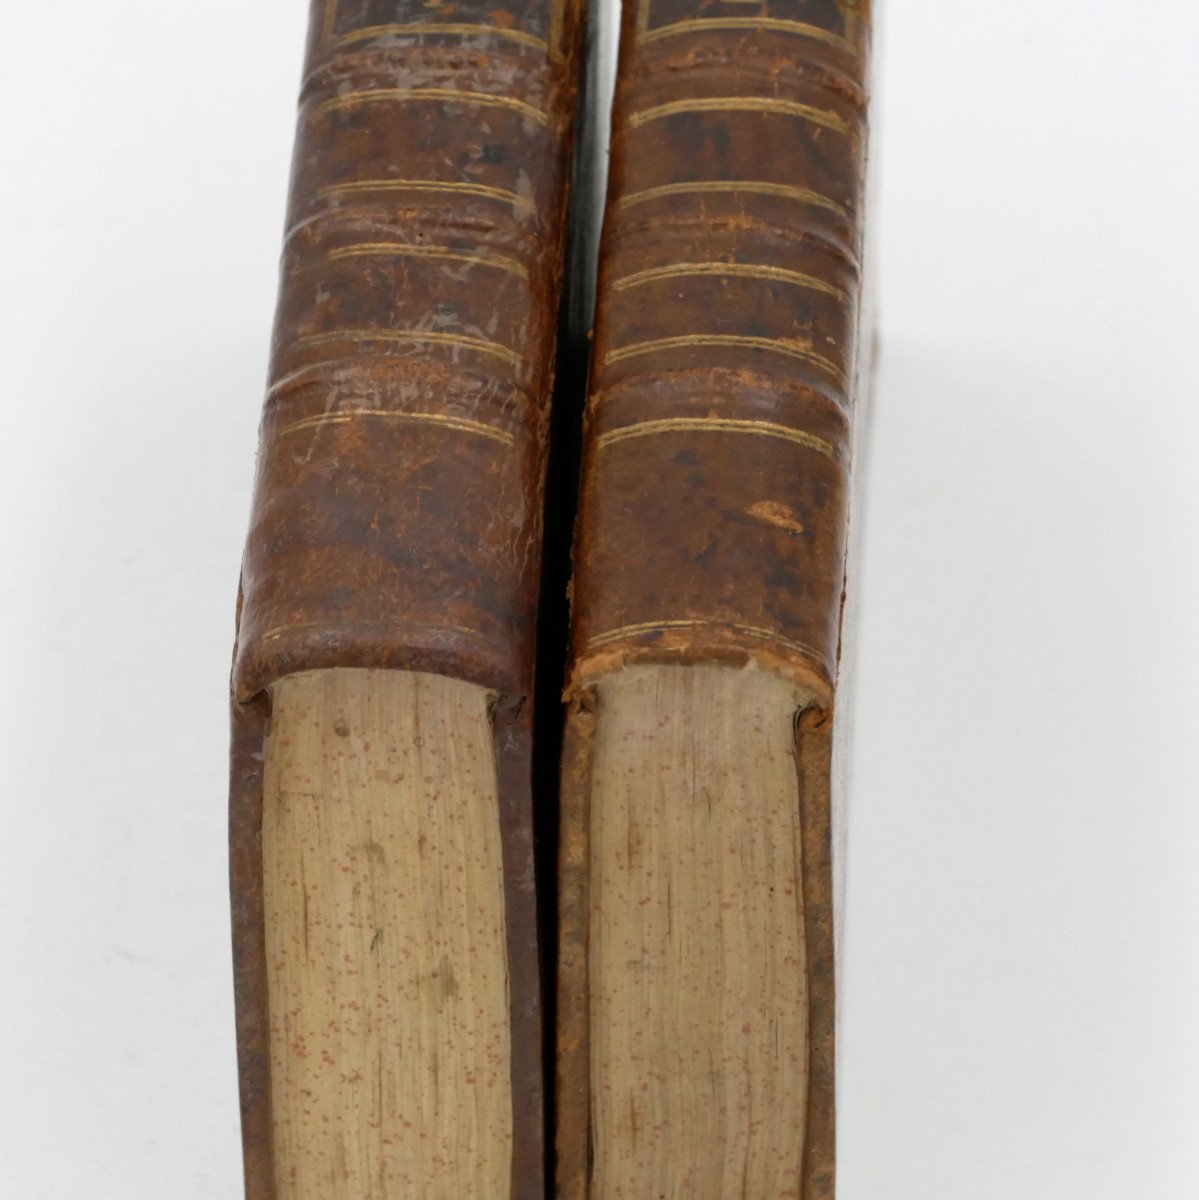 [Médecine] Traité des affections vaporeuses des deux sexes, 1769, 2/2.-photo-4